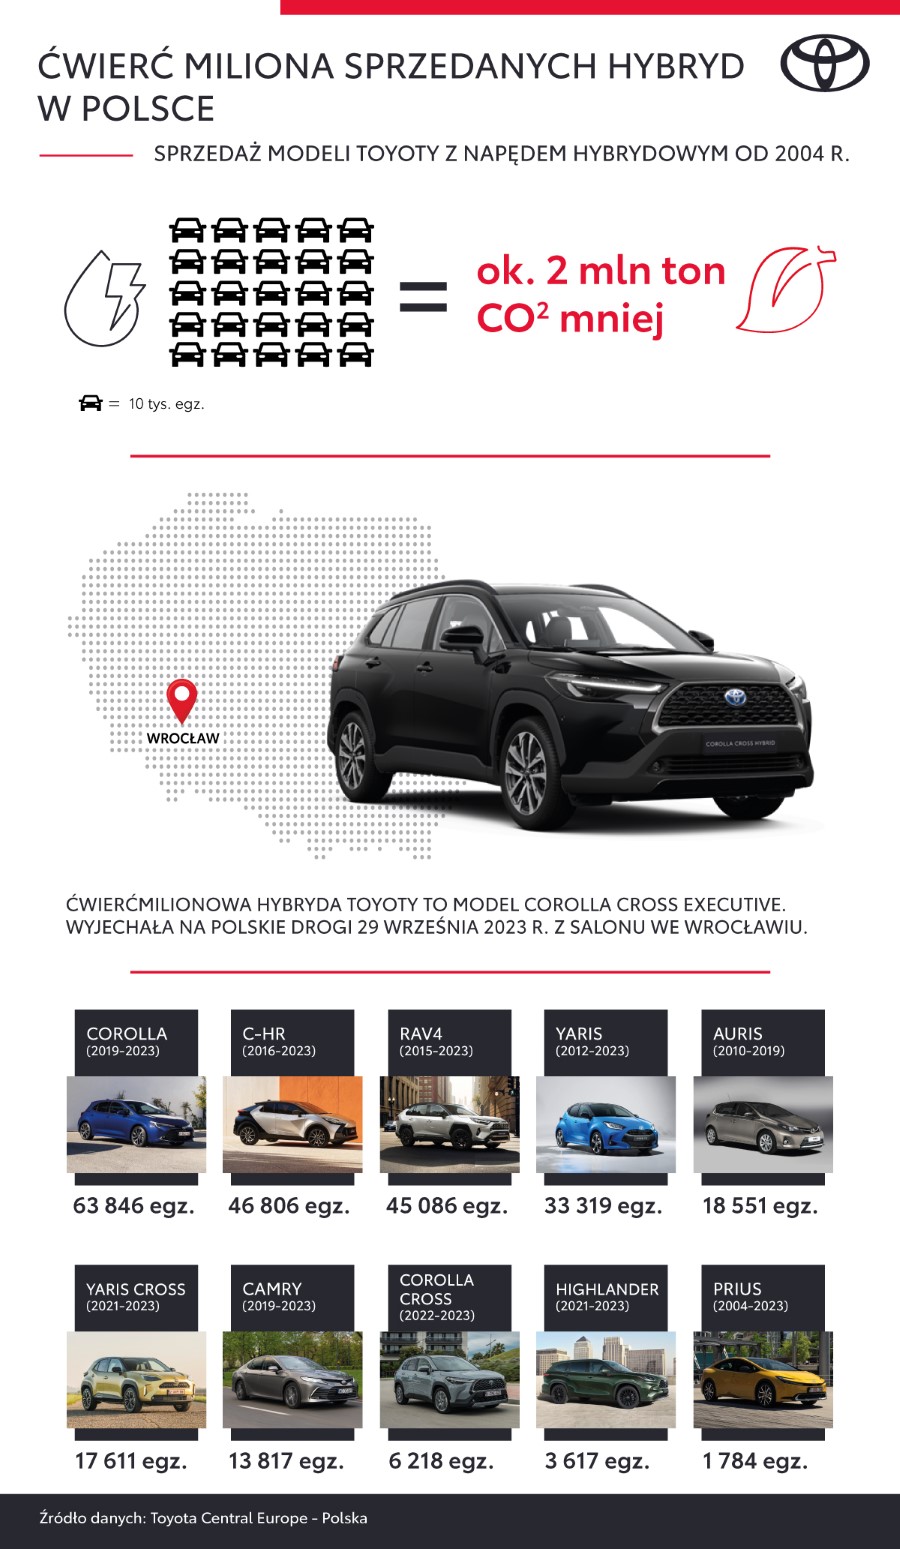 Toyota sprzedała już ćwierć miliona hybryd w Polsce. Autem nr 250 tys. Corolla Cross